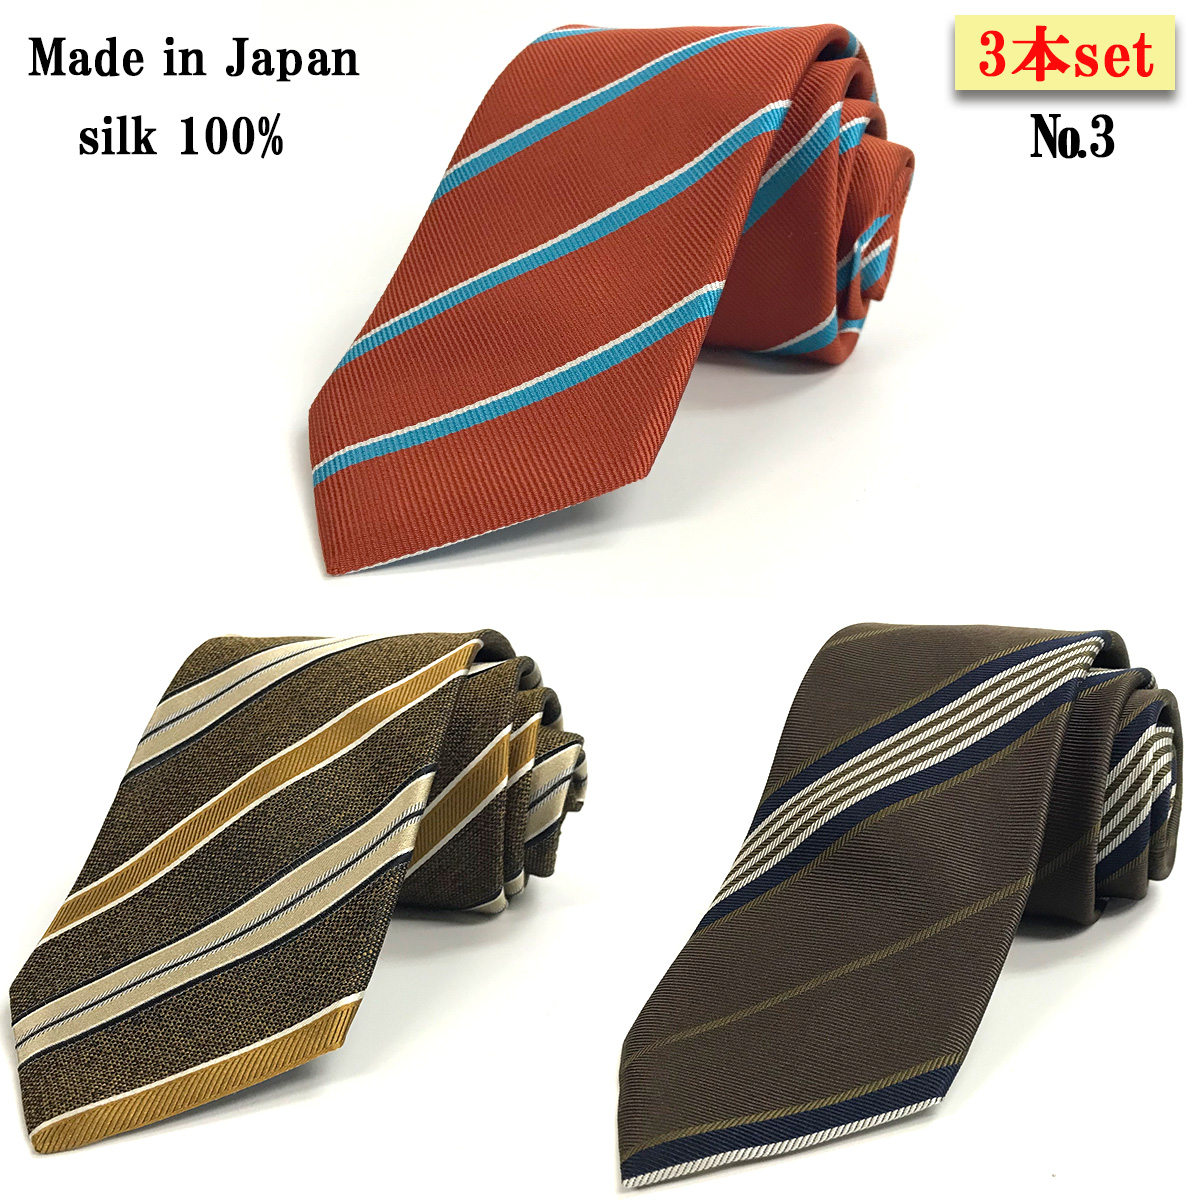 福袋 ネクタイ 3本セット 日本製 シルク ストライプ チェック メール便送料無料